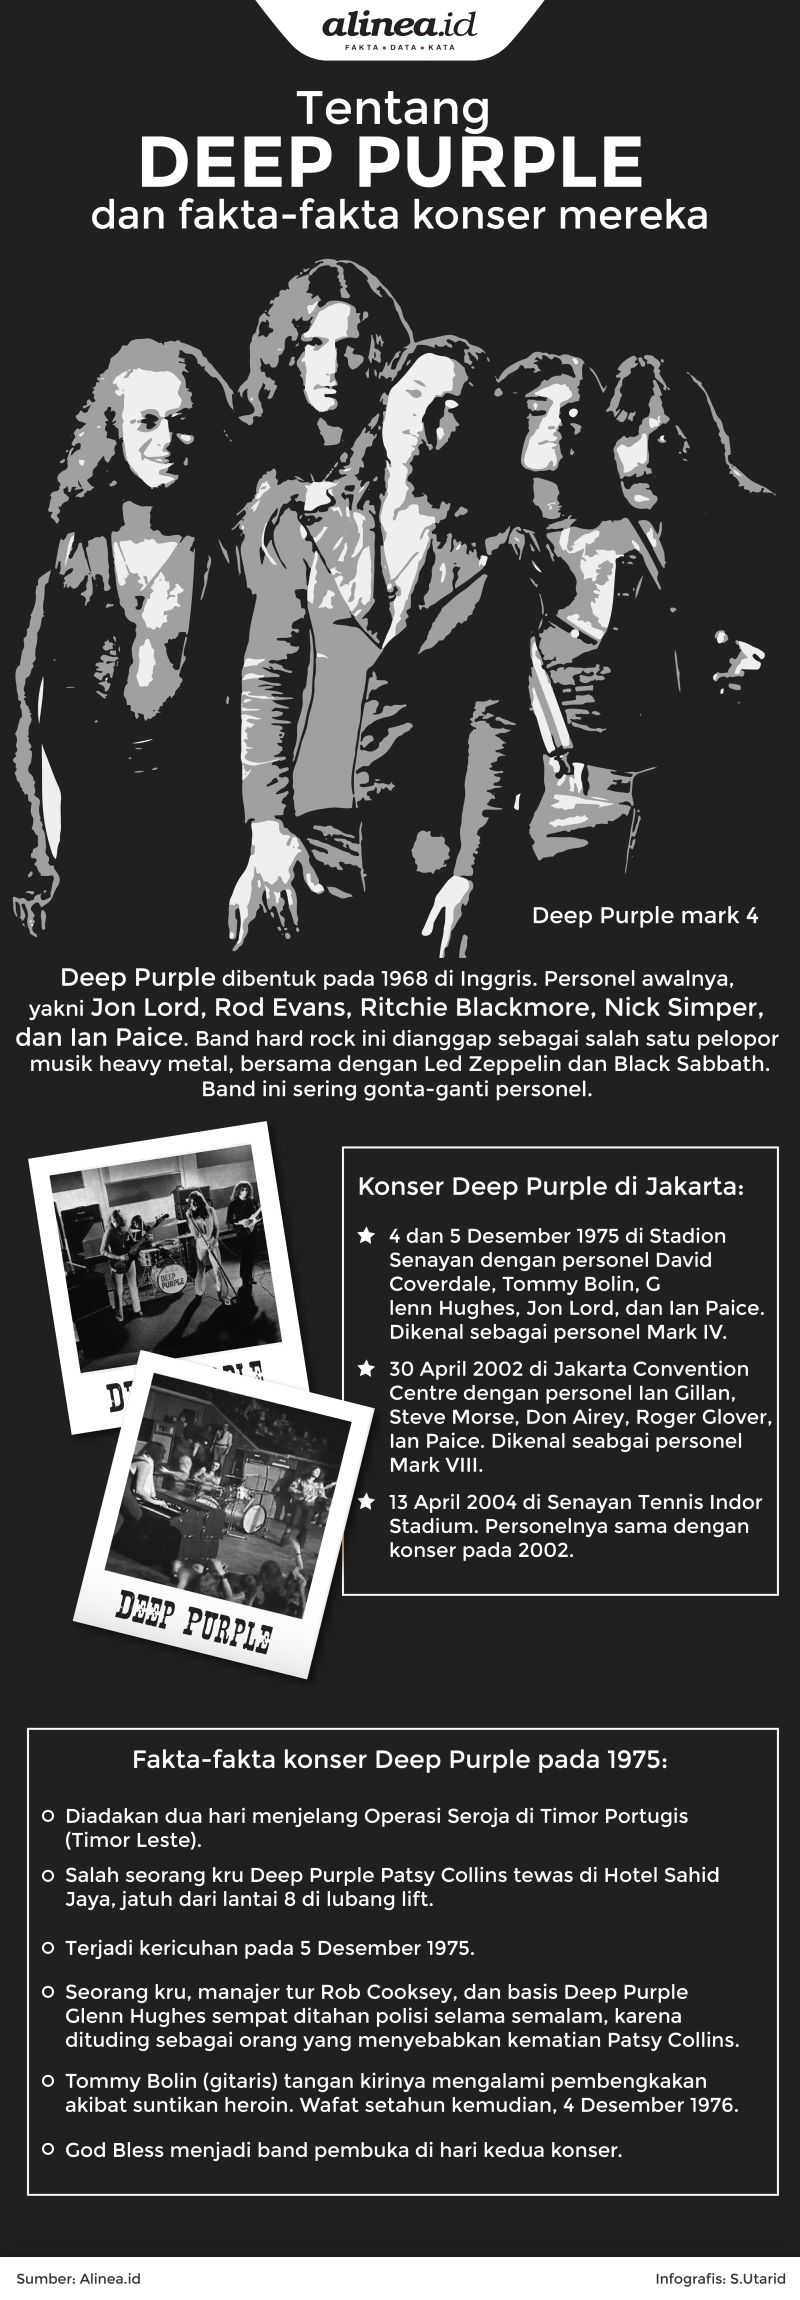 konser Deep Purple di Jakarta pada 1975.Alinea.id